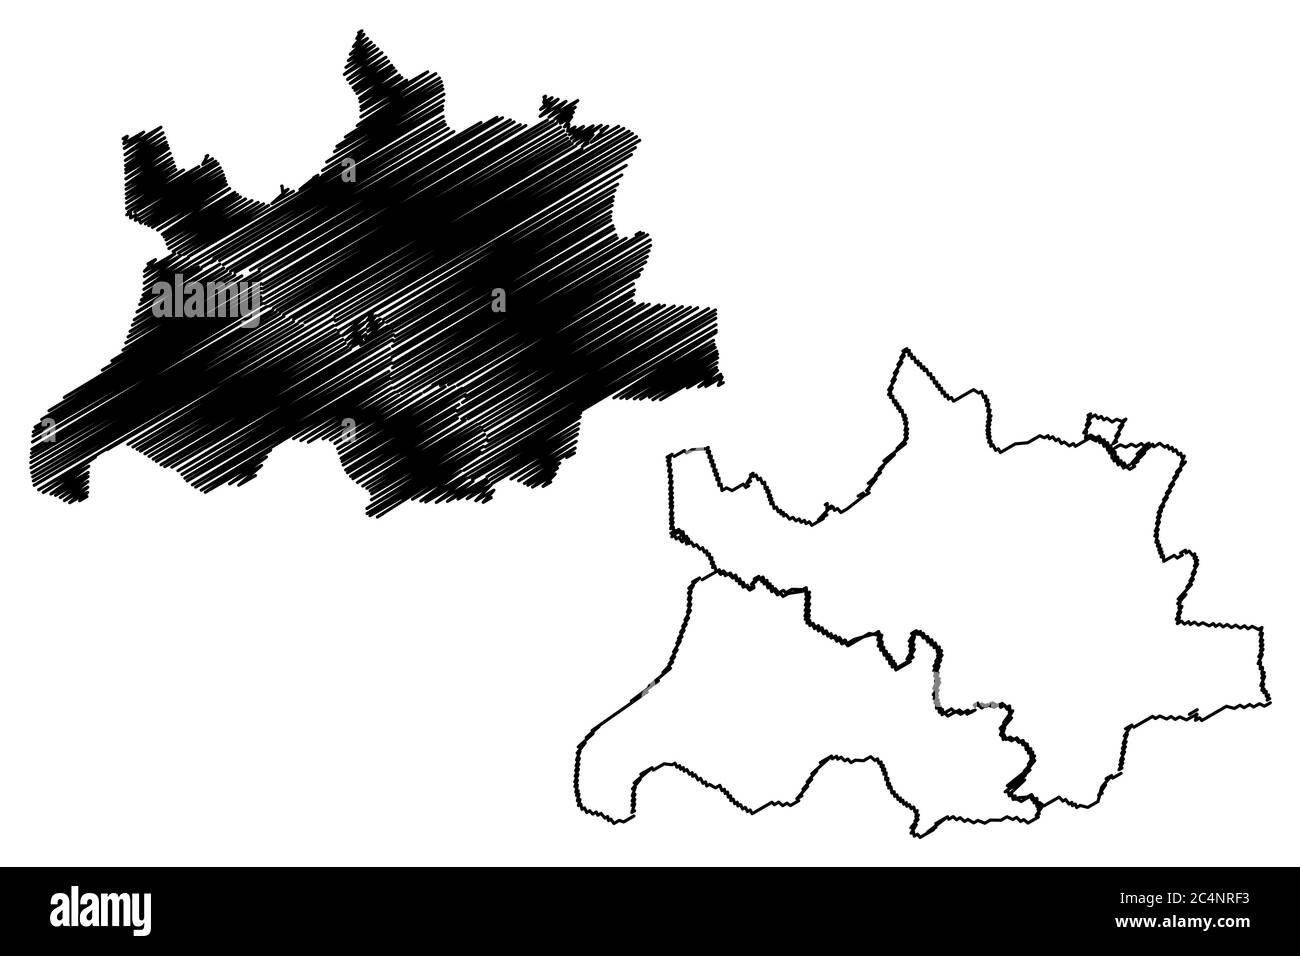 Pimpri-Chinchwad Città (Repubblica dell'India, Stato Maharashtra) mappa vettoriale illustrazione, abbozzare città di Pimpri Chinchwad, mappa di Pune Illustrazione Vettoriale